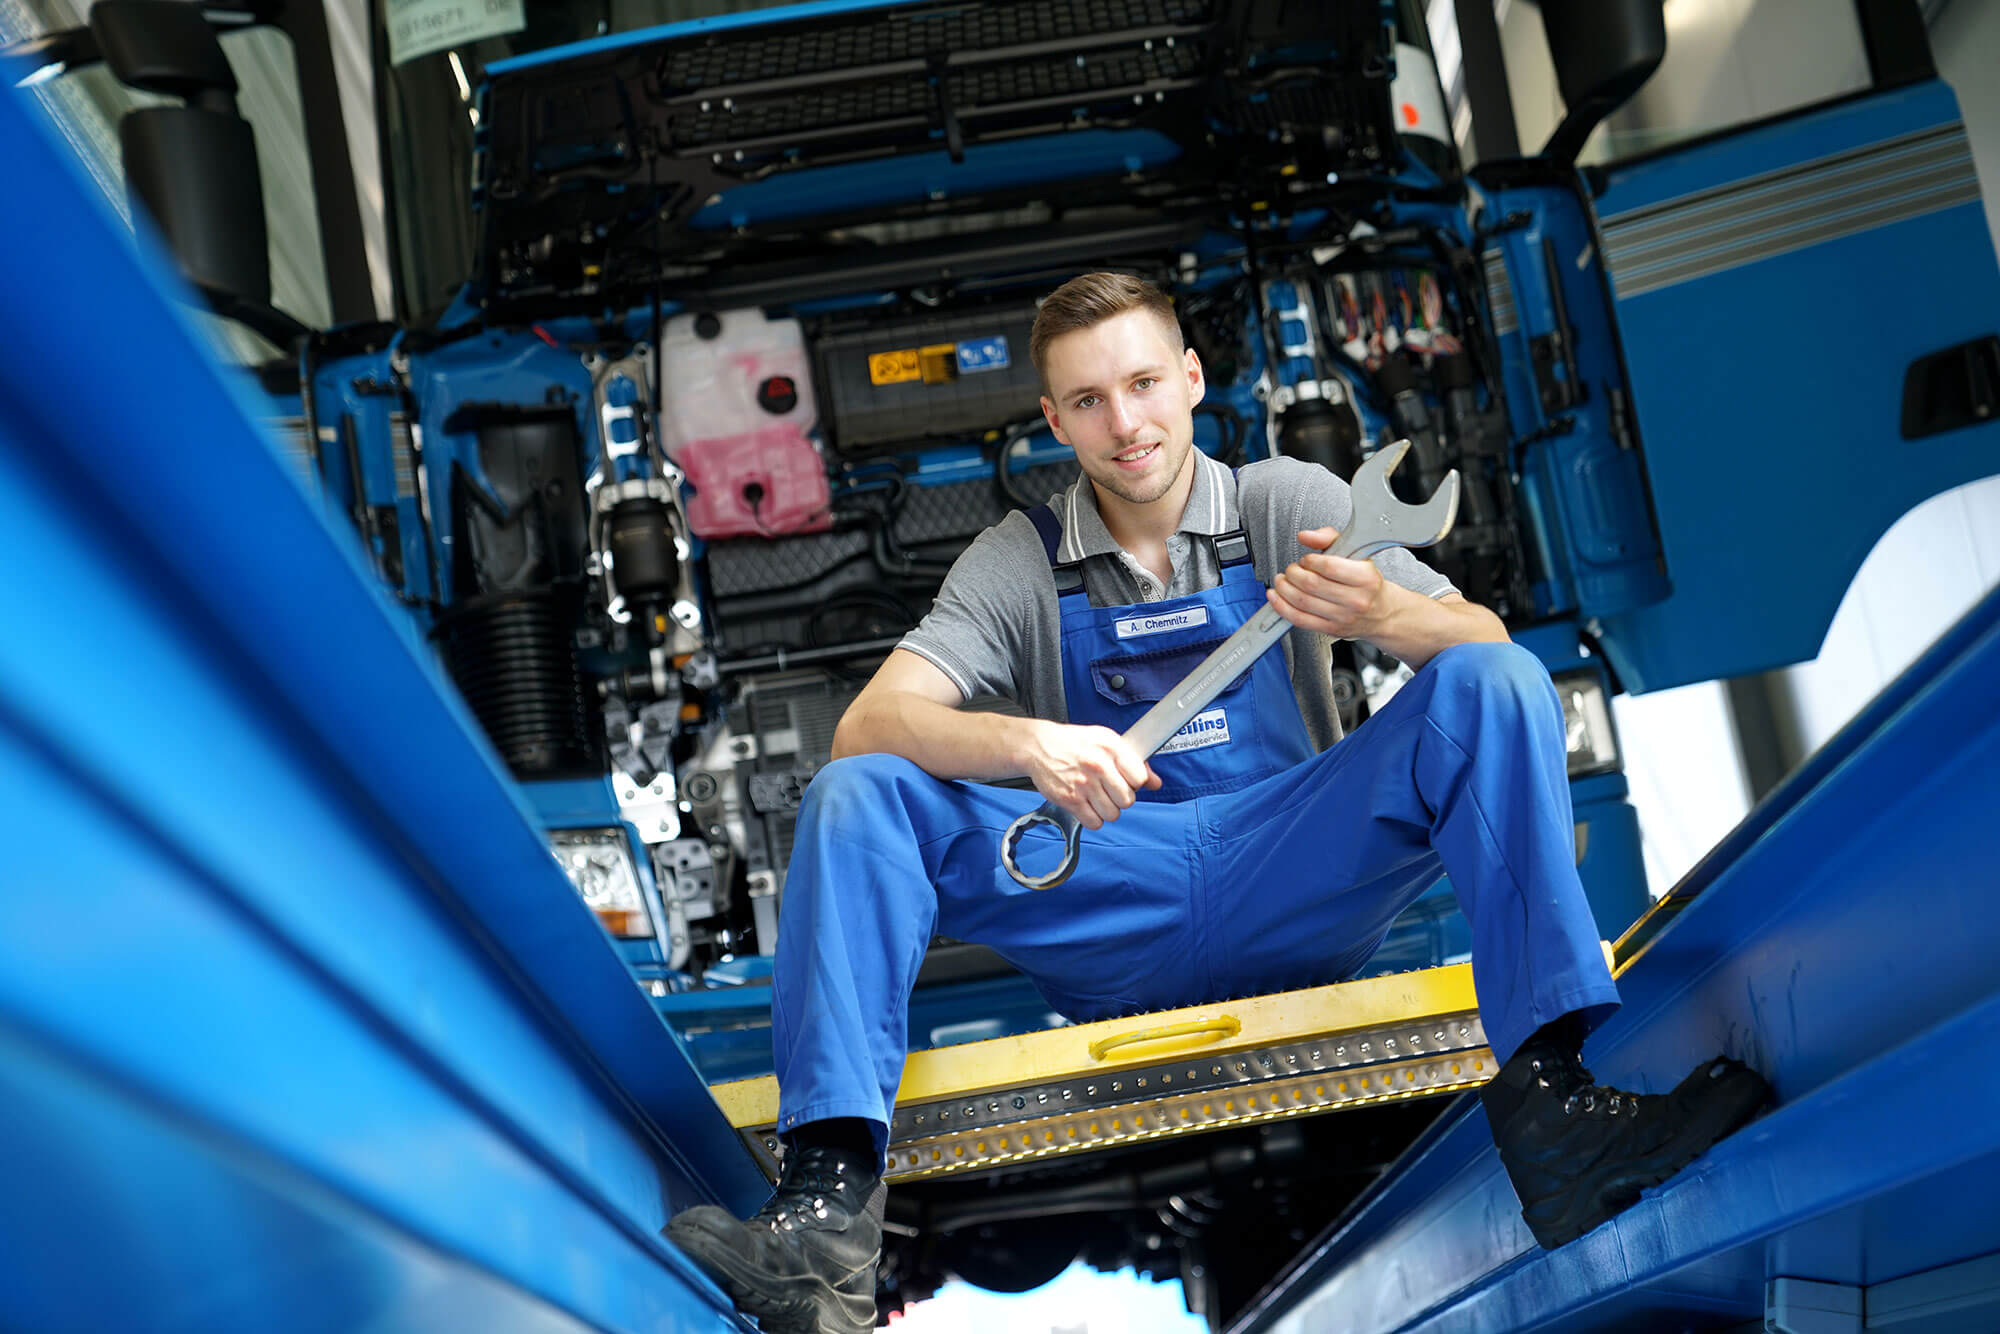 Ein junger Mann in seiner Ausbildung bei Reilling als Mechatroniker für LKWs. Mit einem Schraubenschlüssel in der Hand sitzt er lächelnd an einer LKW-Fahrzeuggrube. Im Hintergrund ist ein großer LKW mit geöffneter Front zu erkennen, bereit, von ihm repariert zu werden.